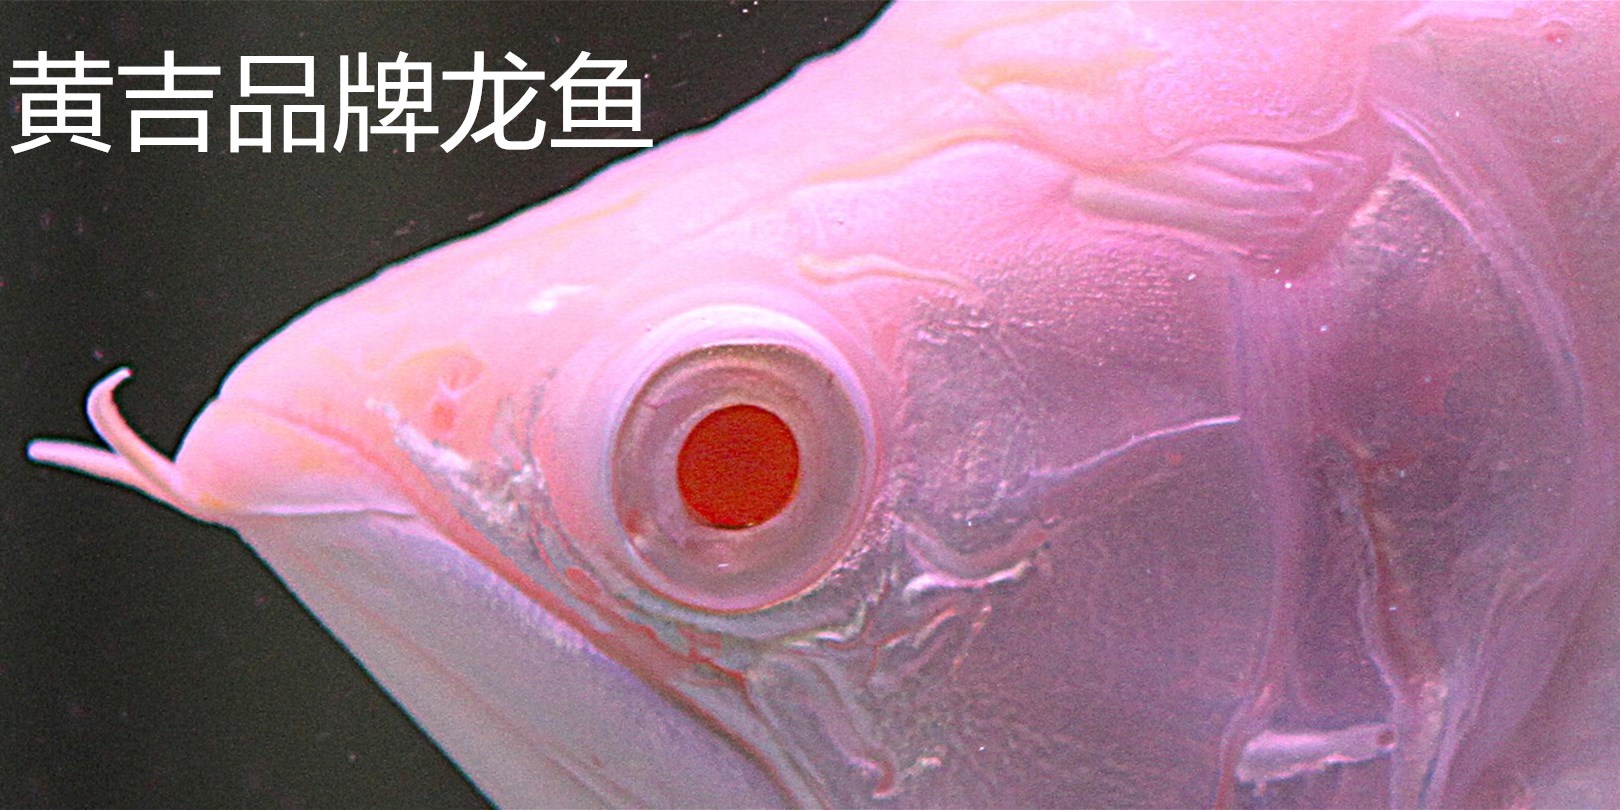 芥子 - 祥龙鱼场品牌产品 - 广州观赏鱼批发市场